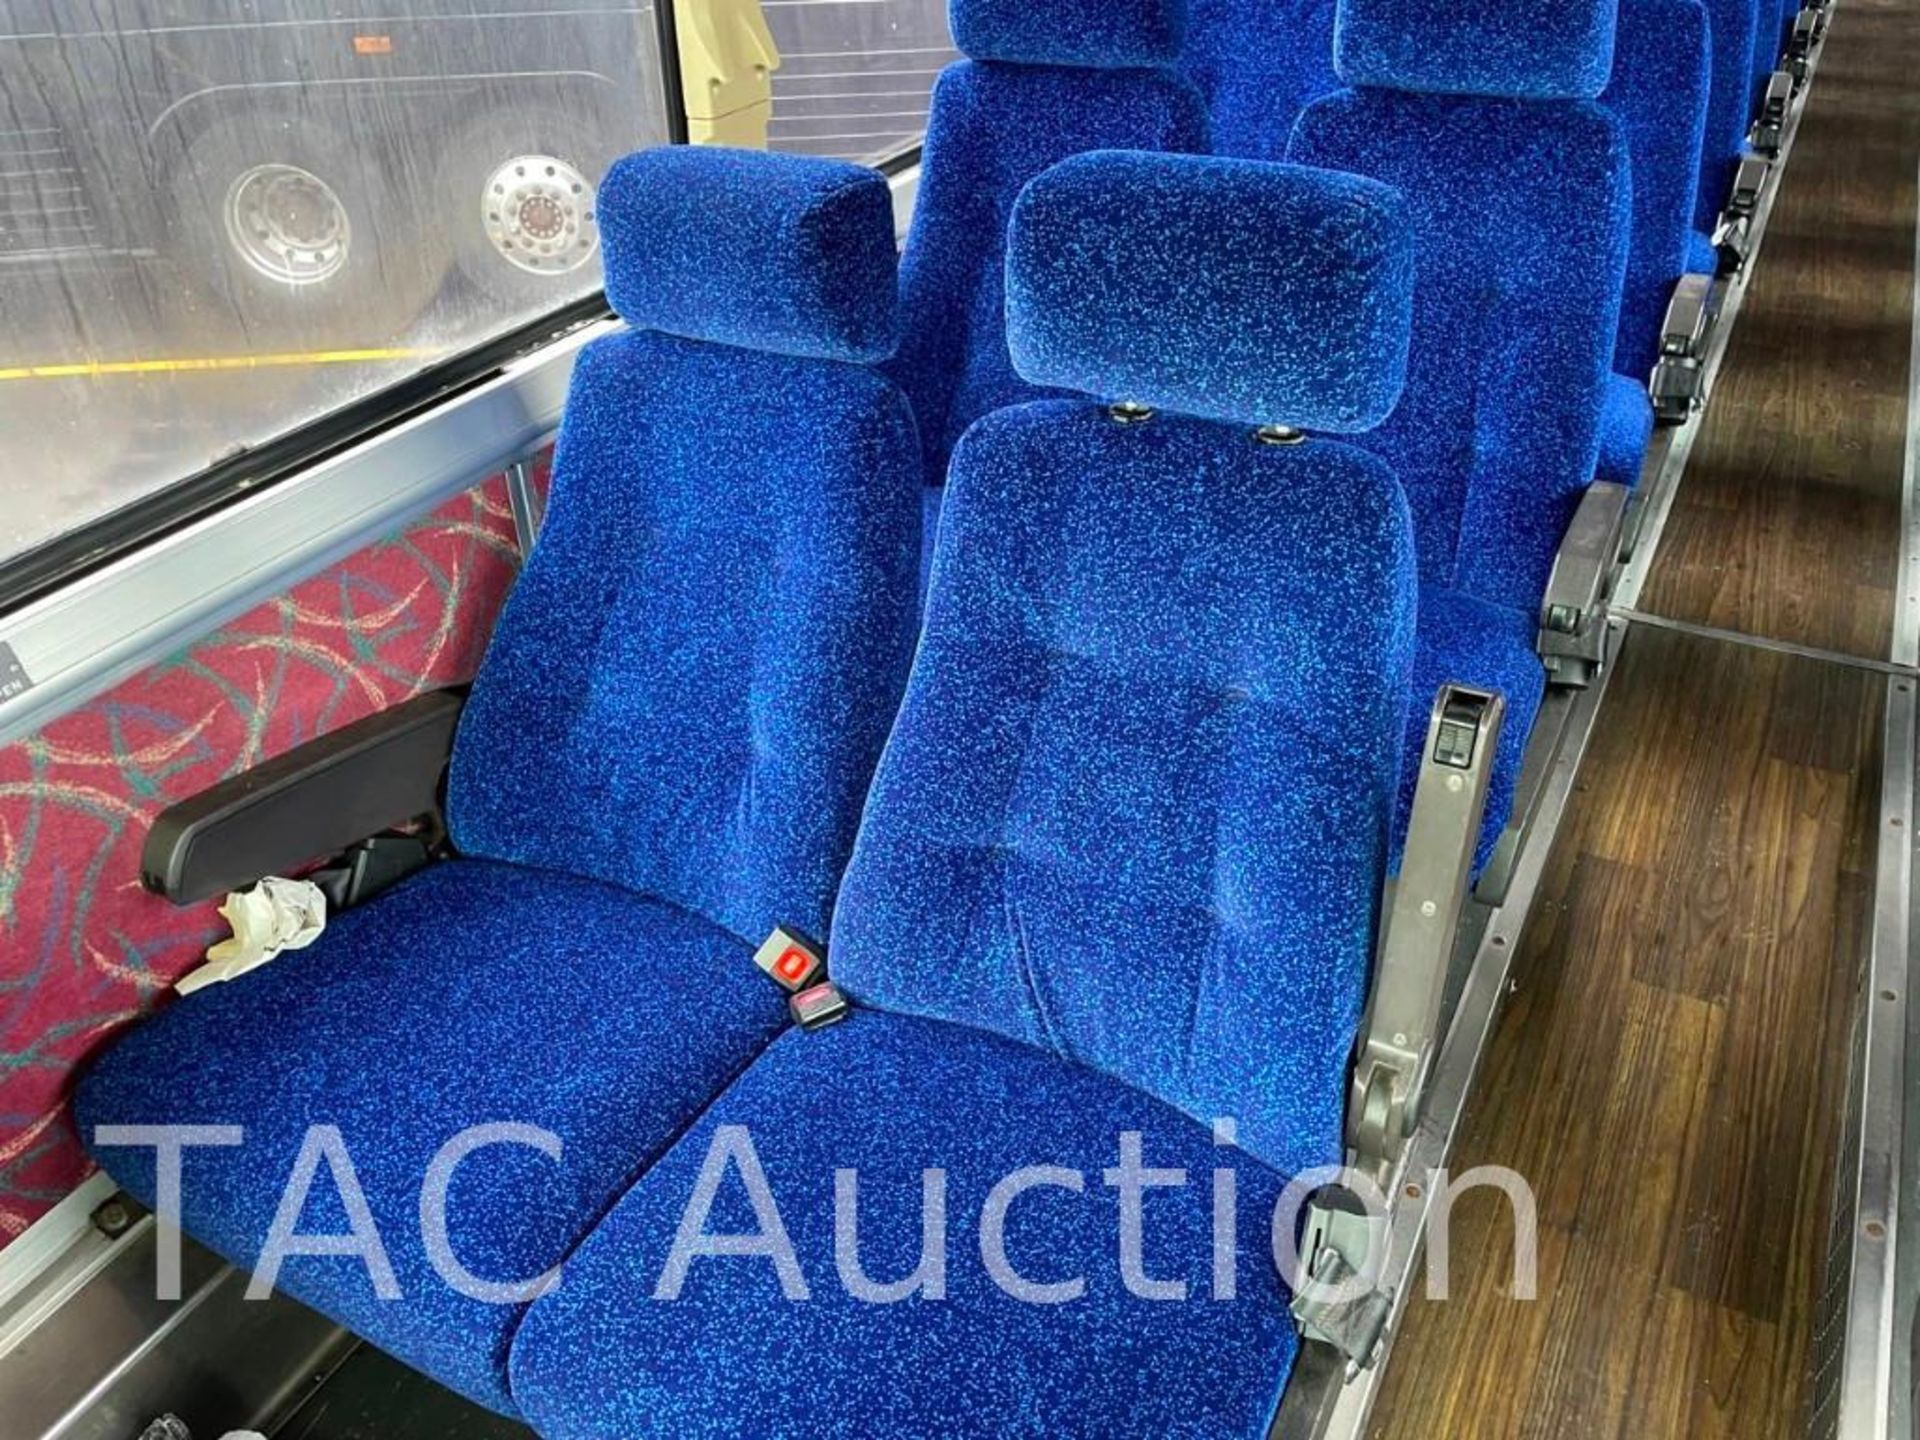 1997 MCI 102-DL3 (45) Passenger Coach Bus - Image 40 of 99